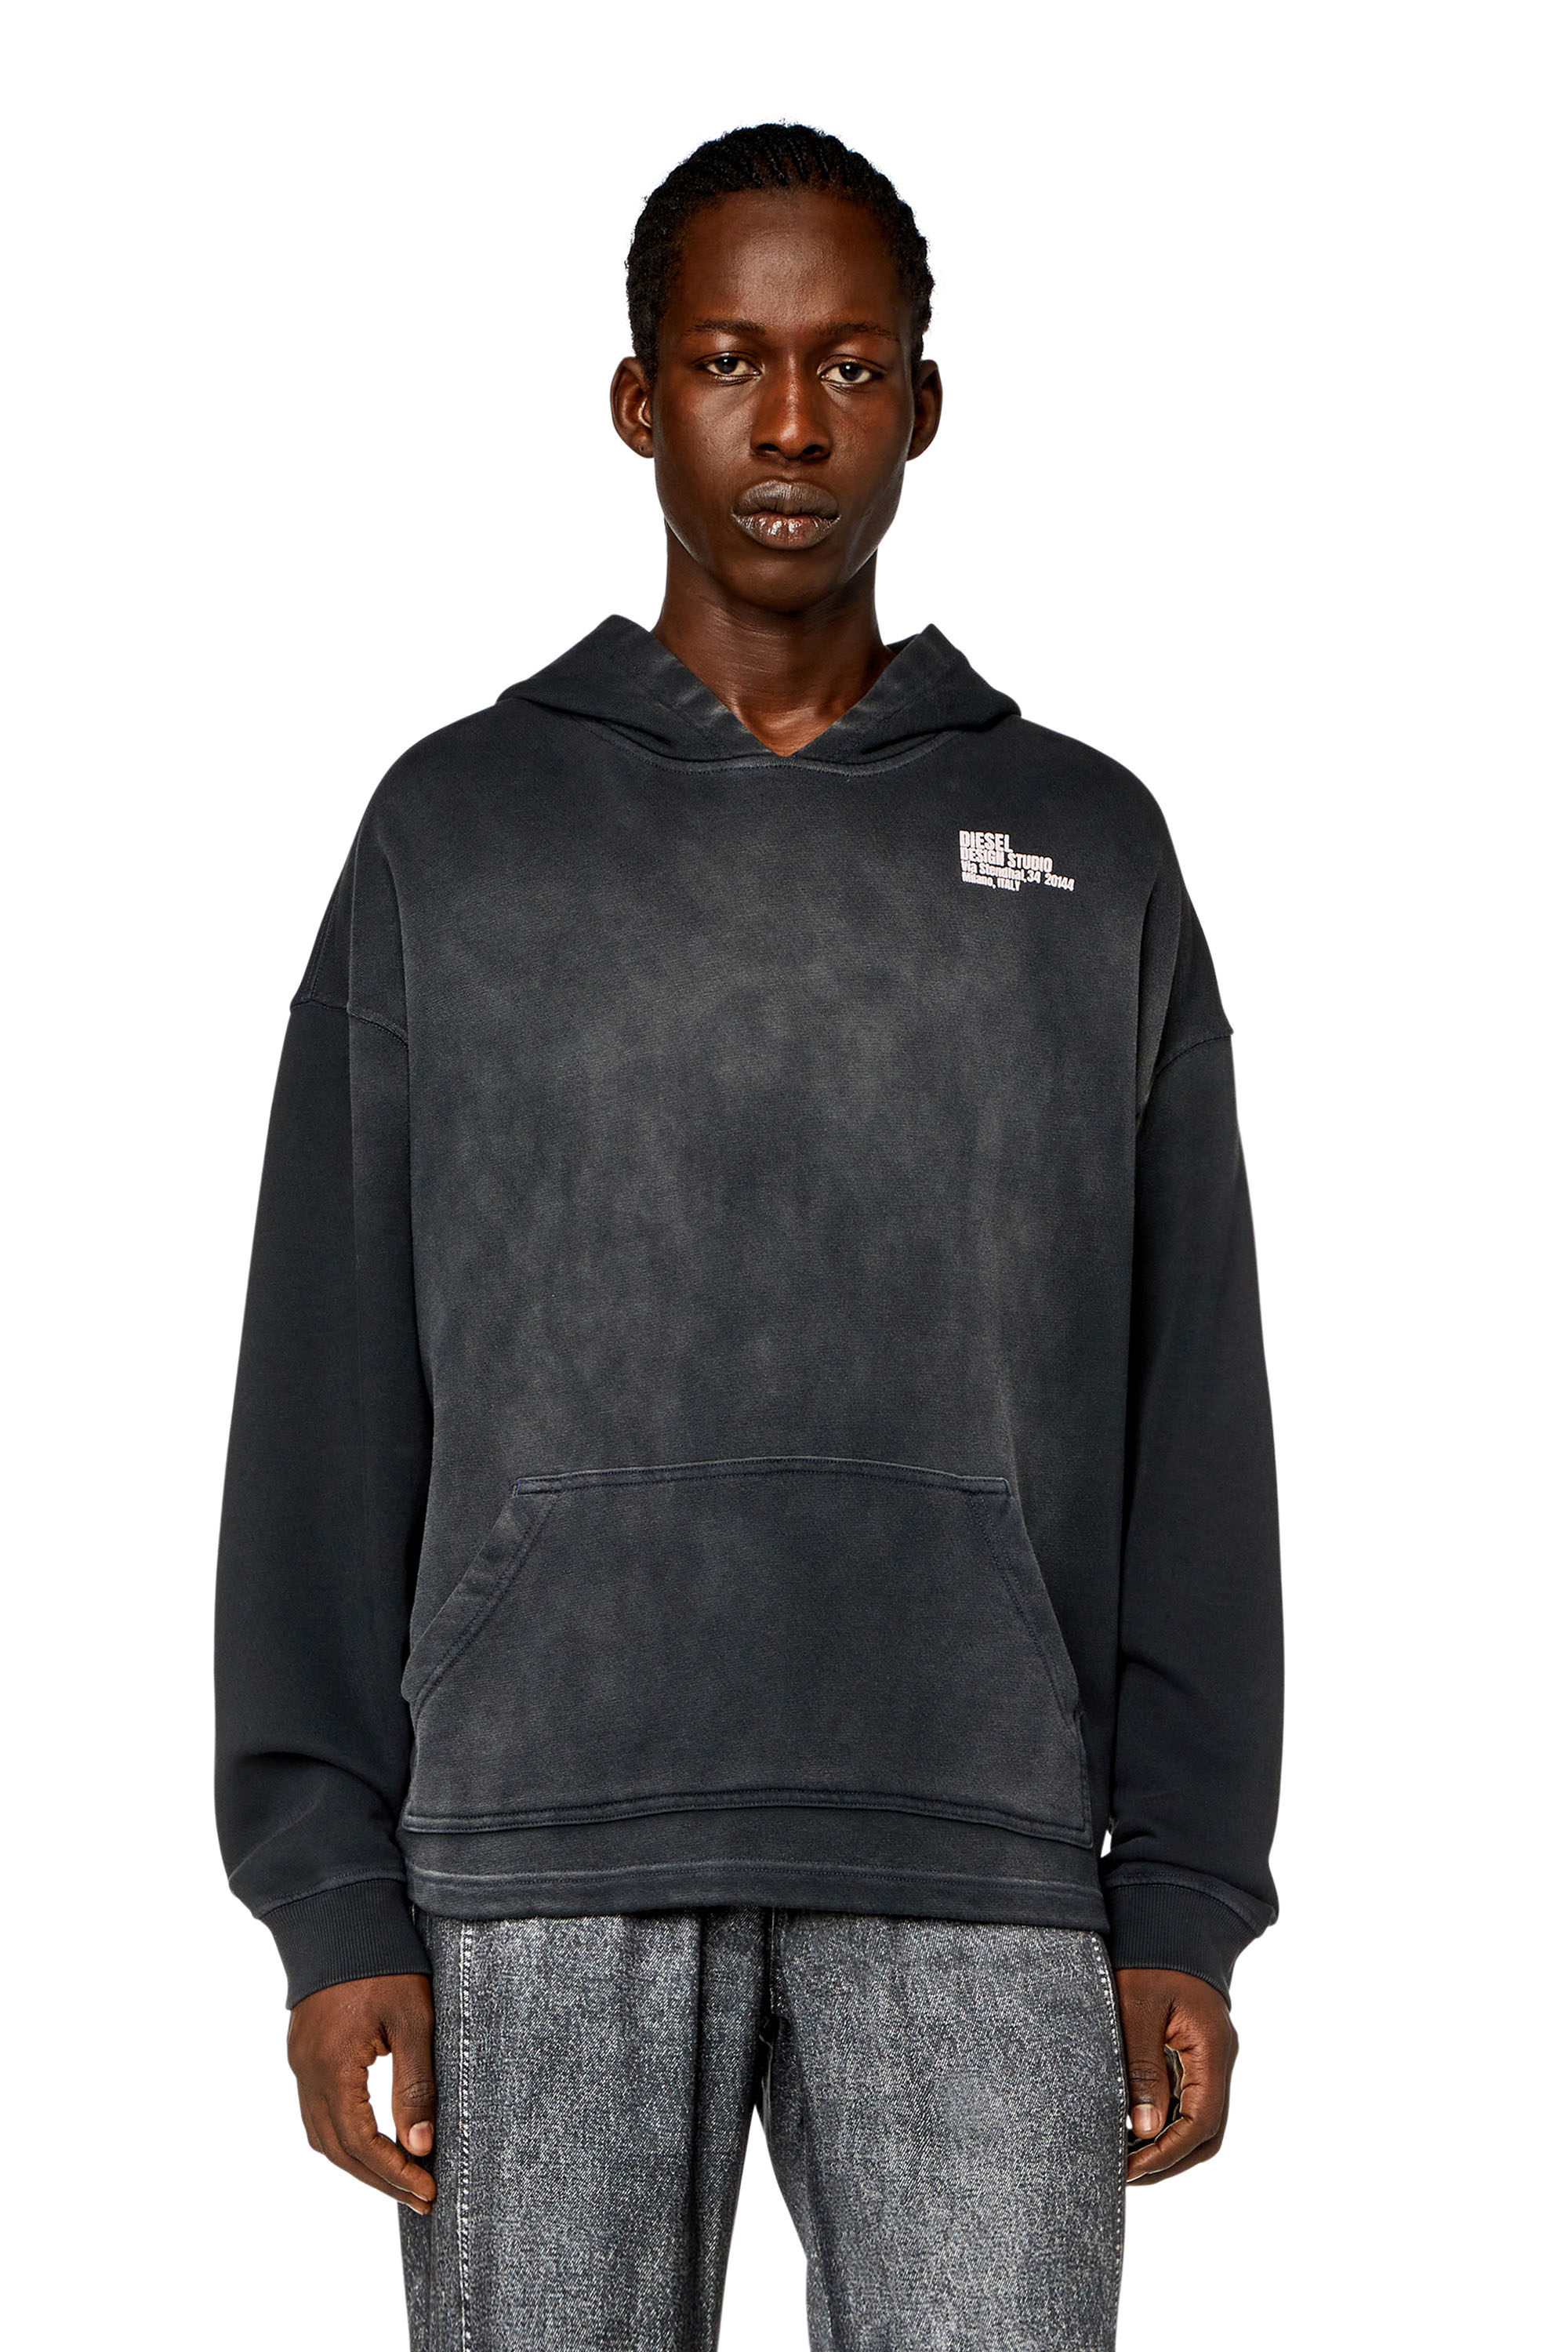 Diesel - Sweat-shirt à capuche avec imprimé Diesel Design Studio - Pull Cotton - Homme - Noir